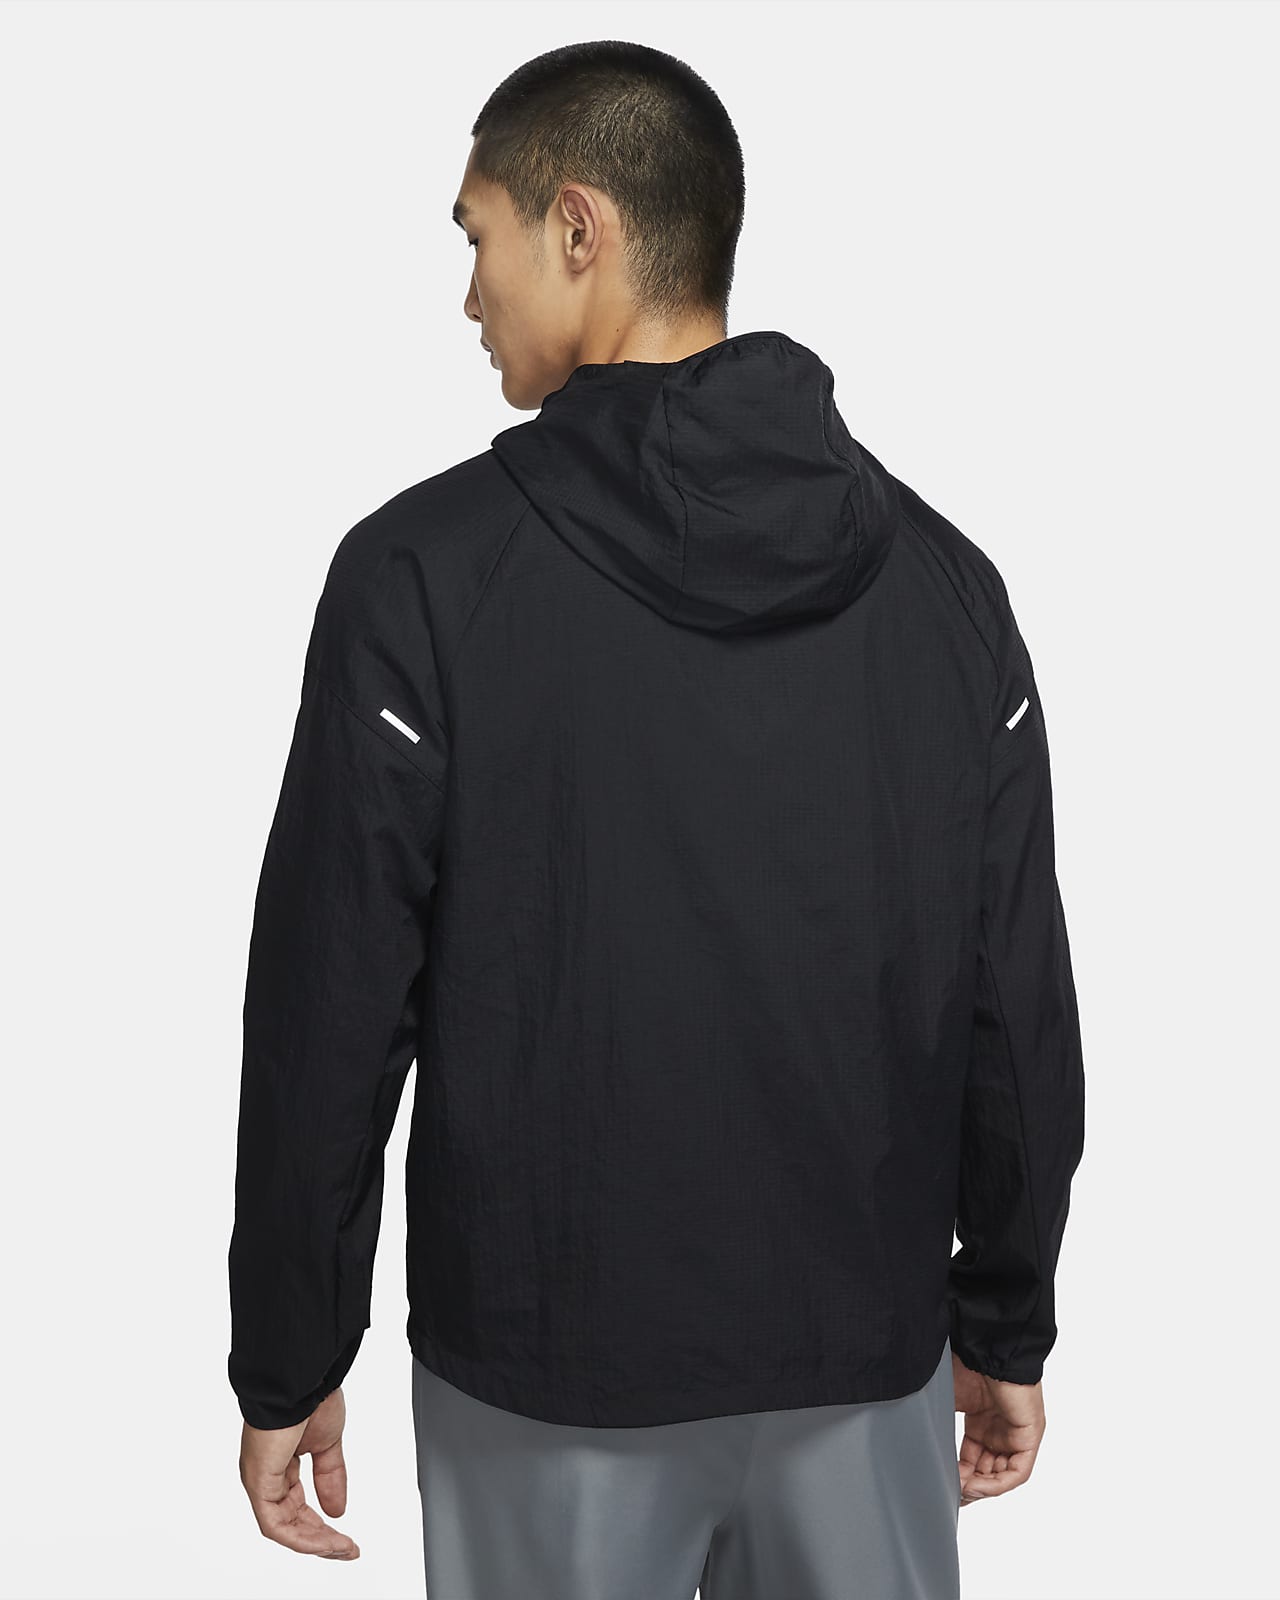 men's hooded running jacket nike essential